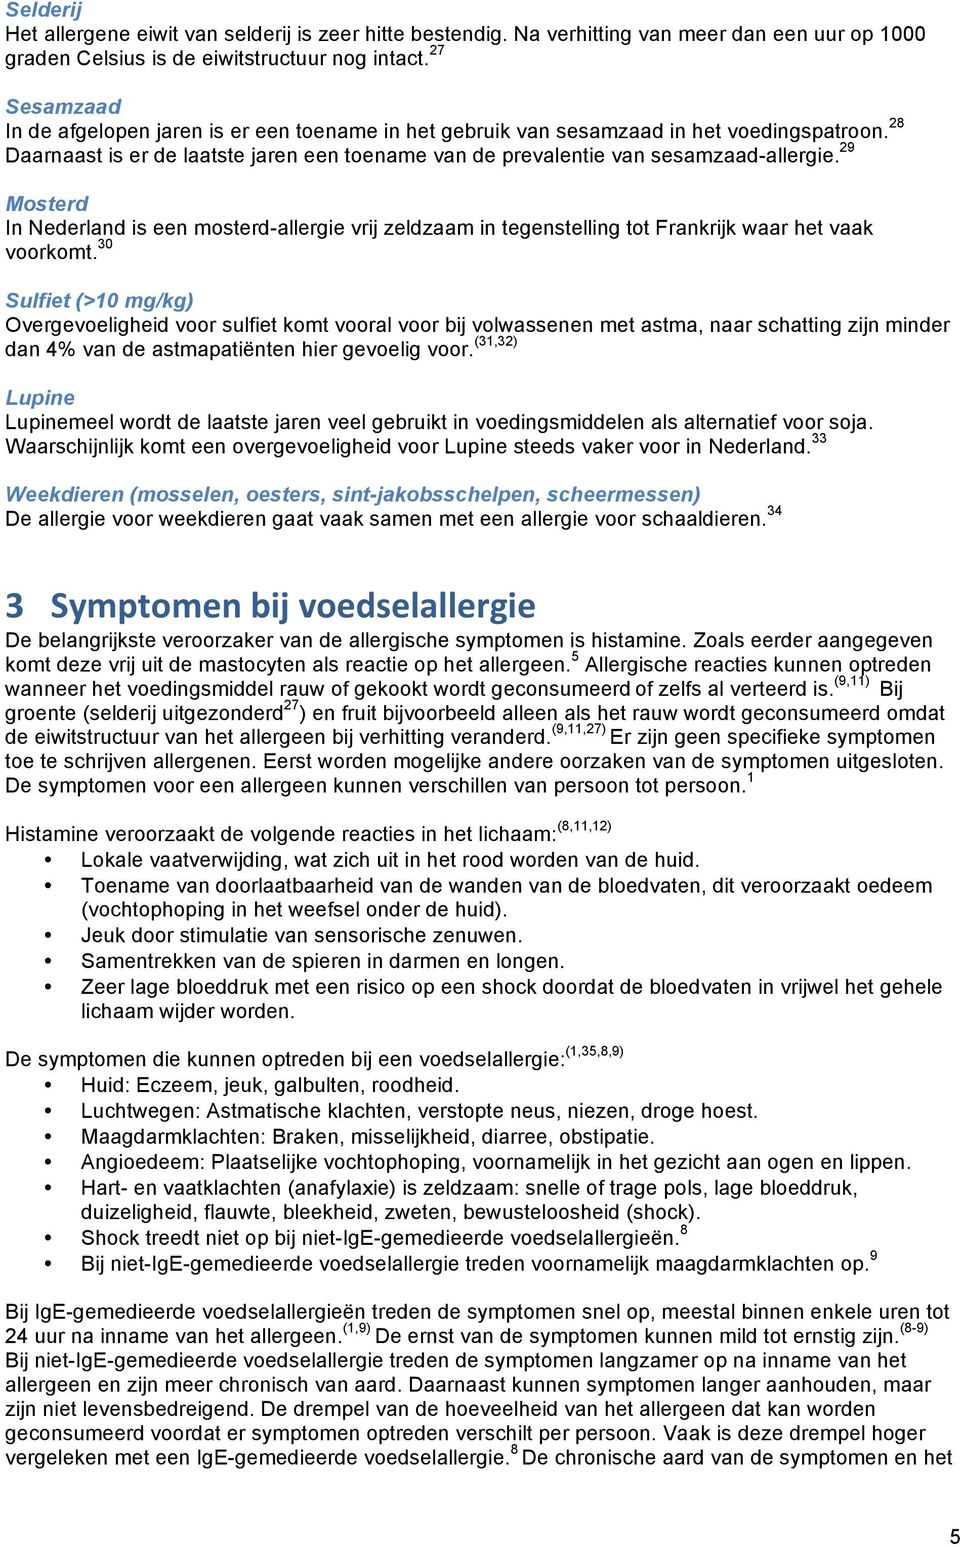 29 Mosterd In Nederland is een mosterd-allergie vrij zeldzaam in tegenstelling tot Frankrijk waar het vaak voorkomt.